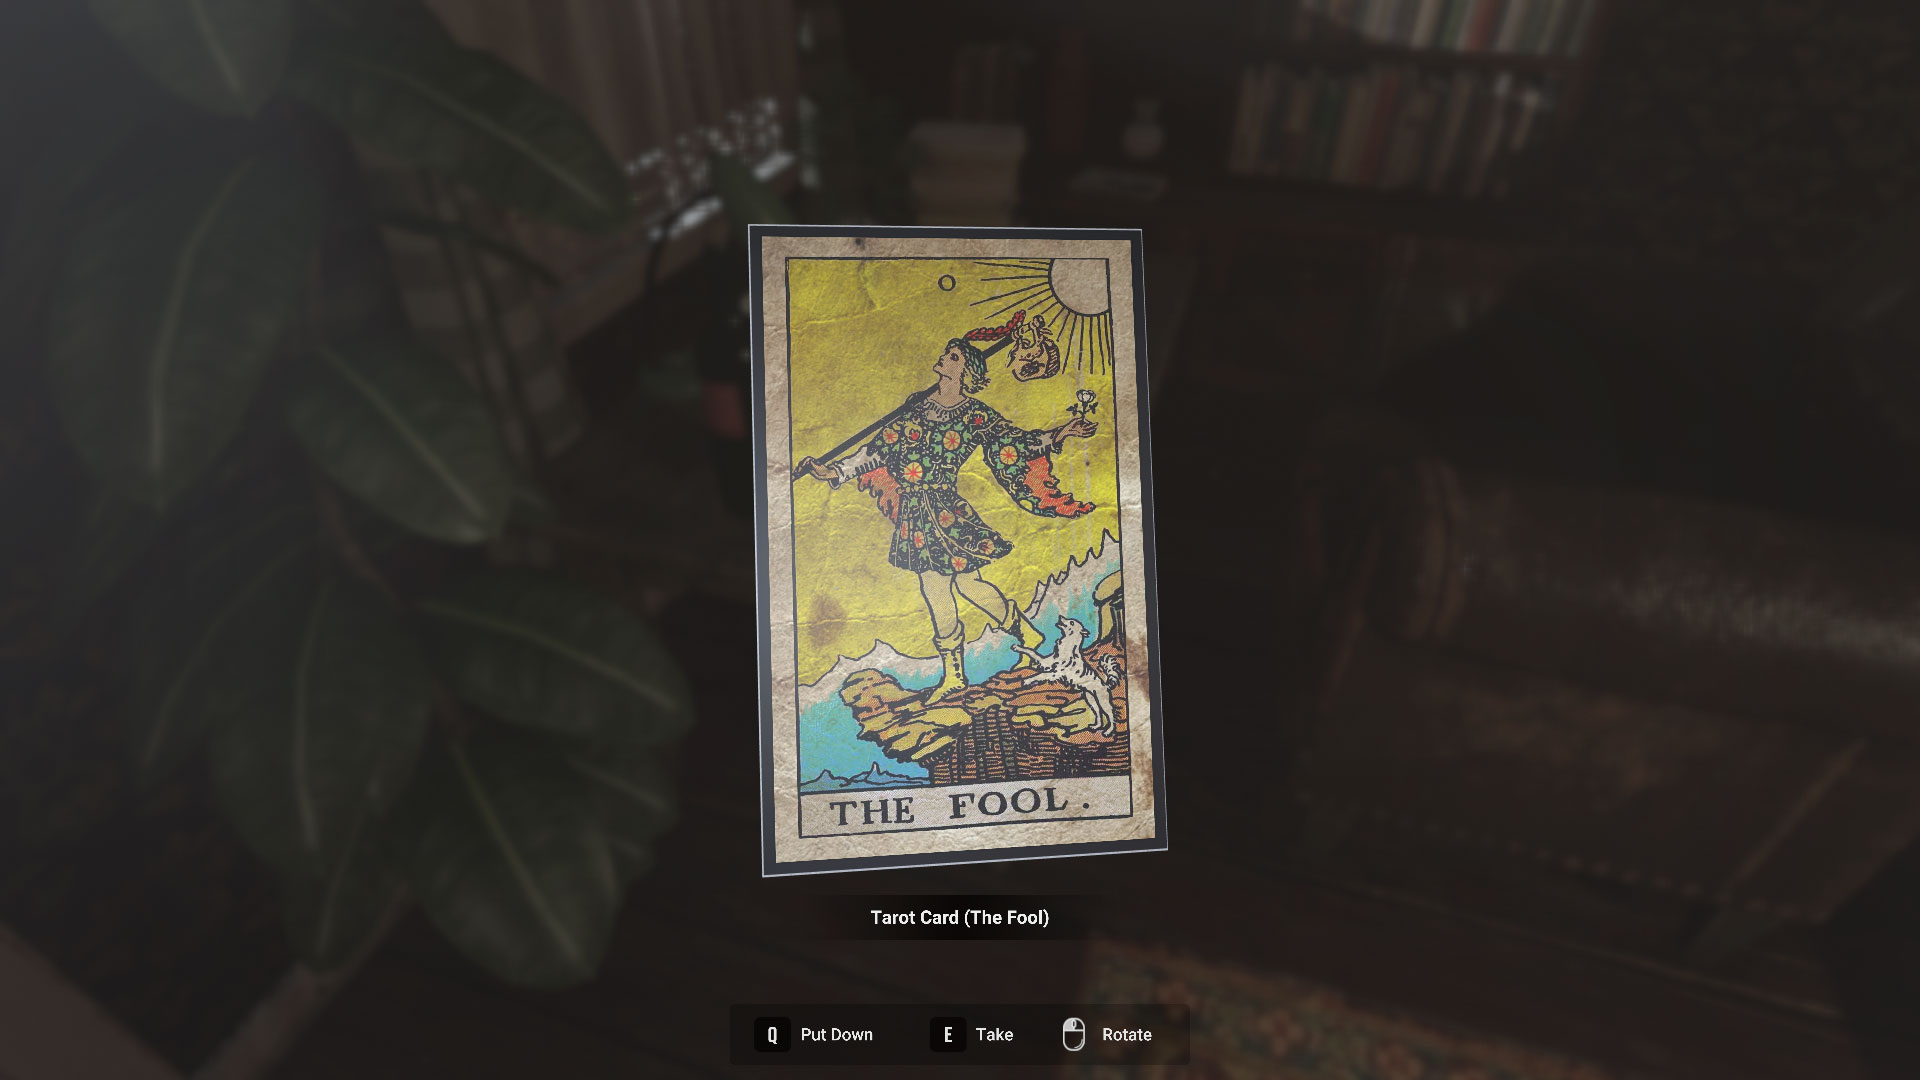 Finding the fool tarot card in The Swine